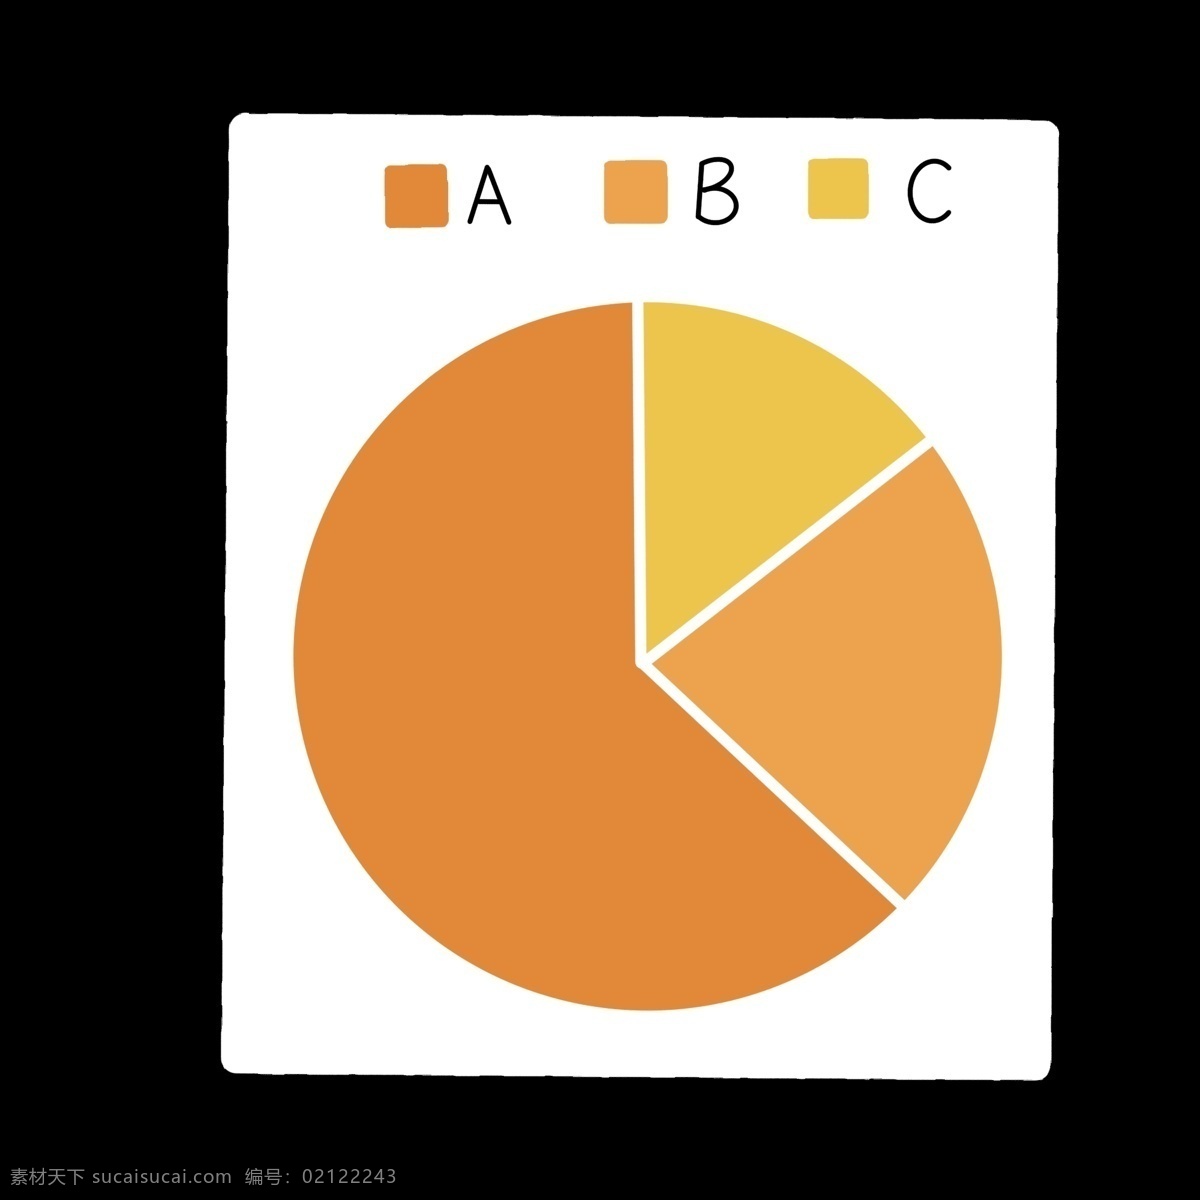 黄色 圆饼 子母 分类 标识 分开 简洁 简约 简单 卡通 ppt专用 分别介绍模板 色块 几何形体